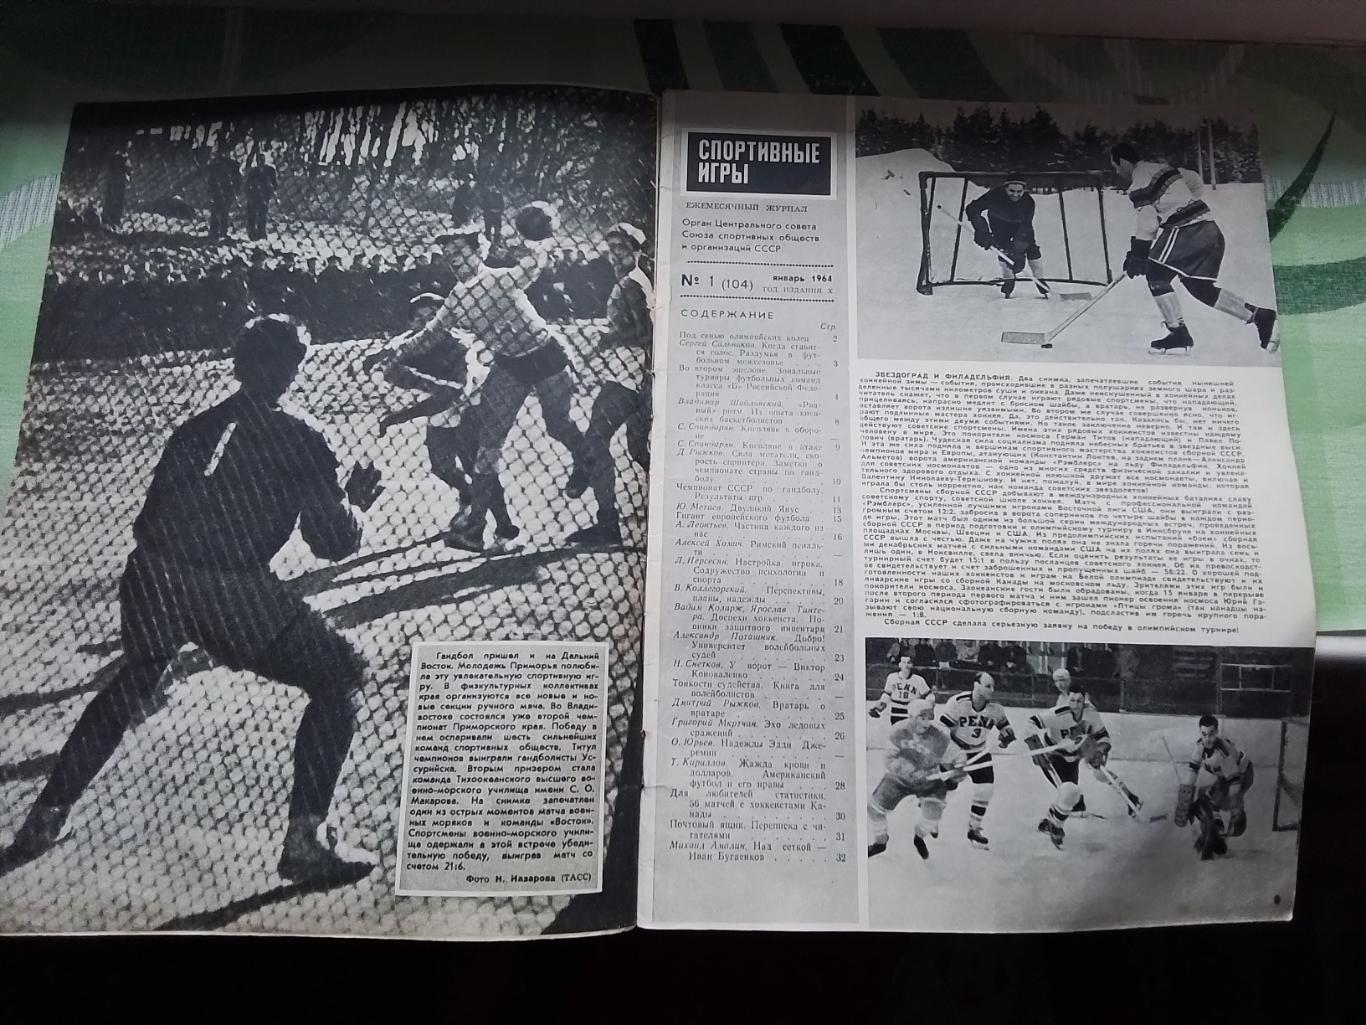 Журнал Спортивные игры 1964 N 1 Таблицы шахматки класса Б и чемпа по гандболу 1